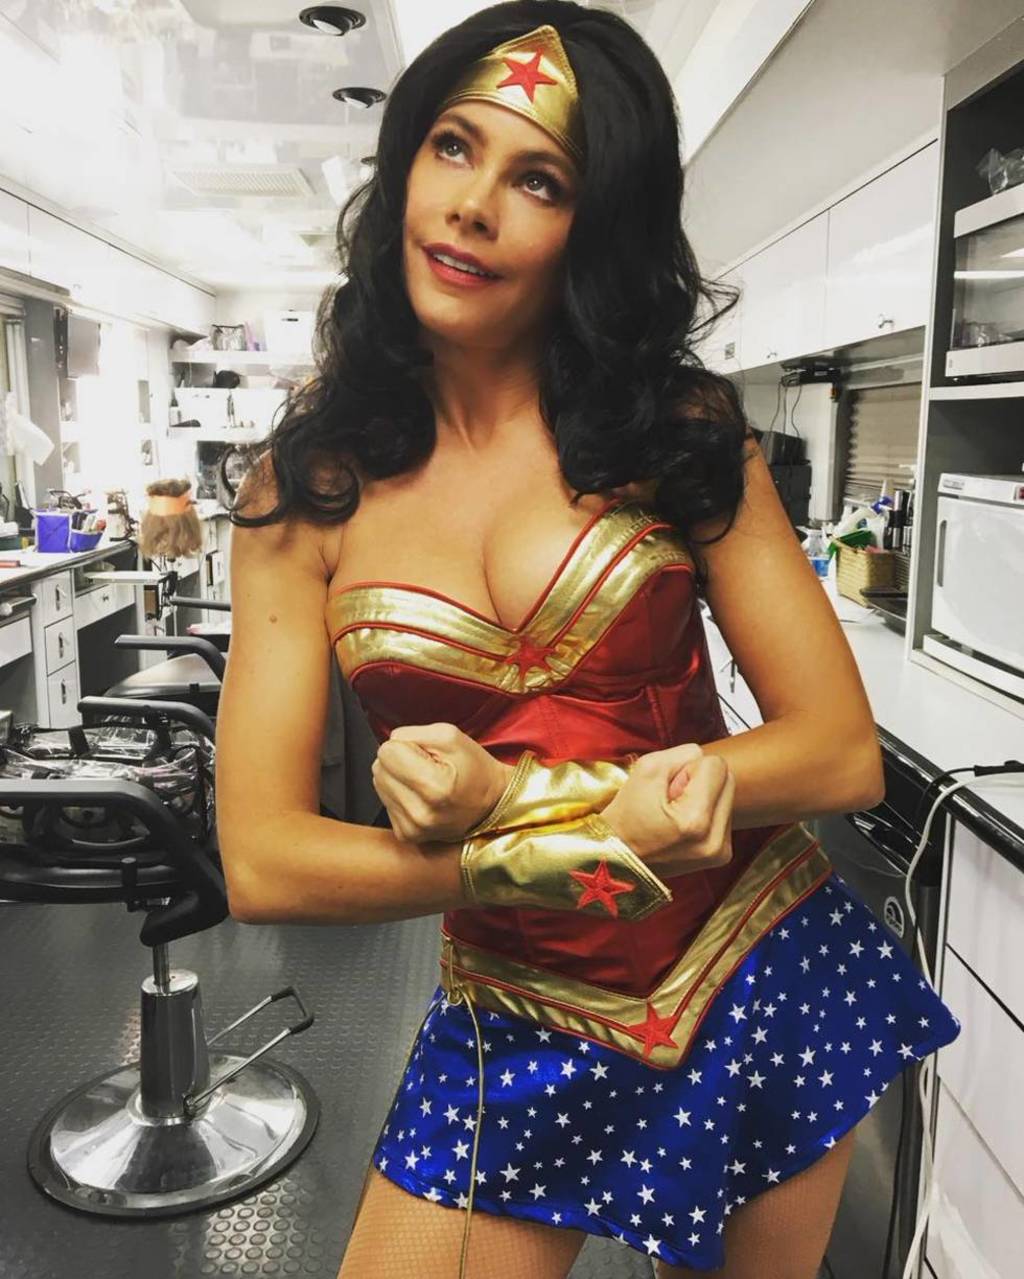 Disfraz. La actriz utilizó el atuendo de 'Wonder Woman' para uno de los capítulos de la teleserie Modern Family. (ARCHIVO)